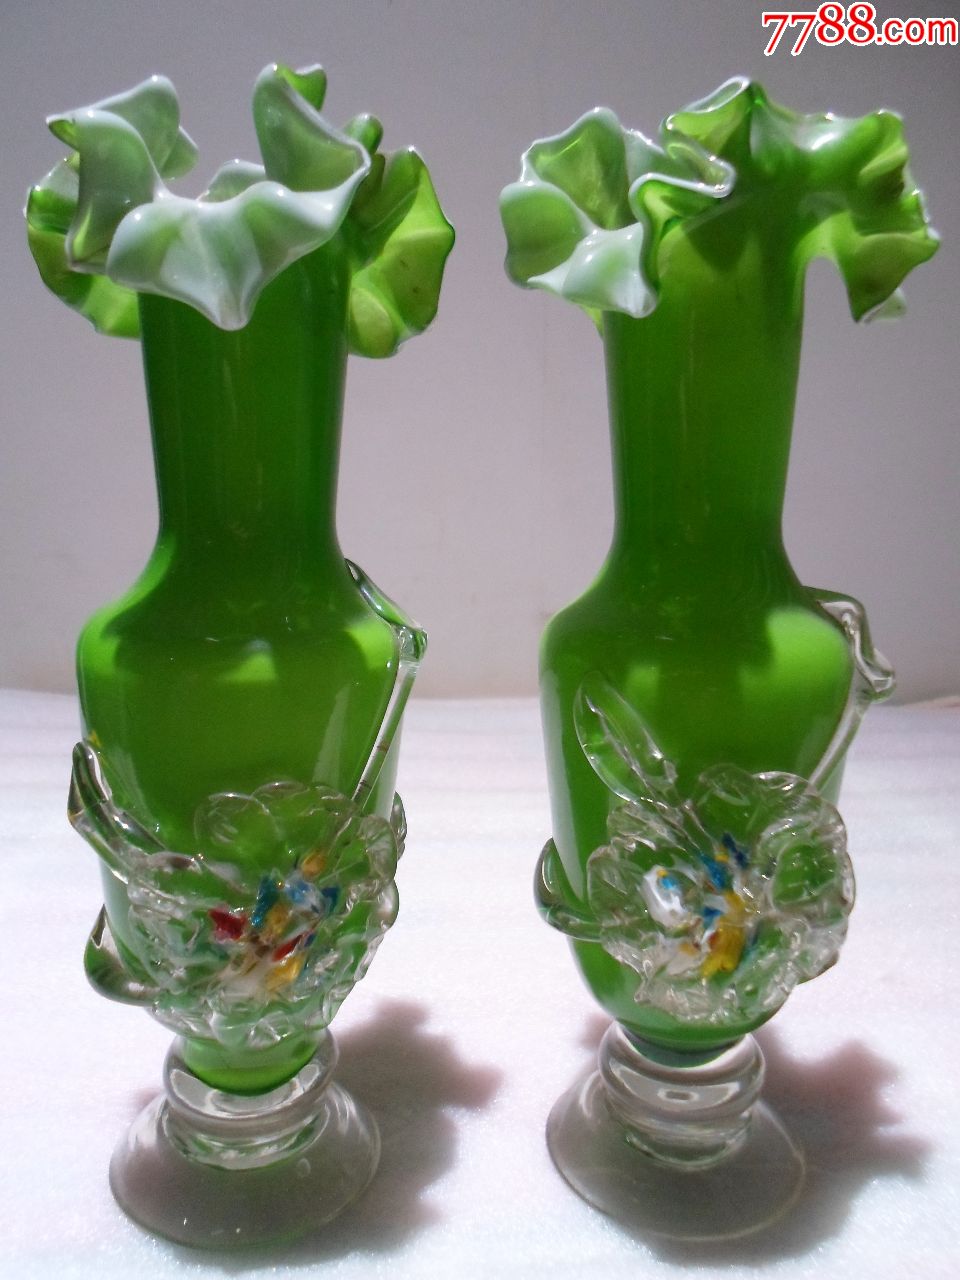 文革老物件:全品上翻花下堆花翠绿色纯手工料器老琉璃花瓶一对_价格